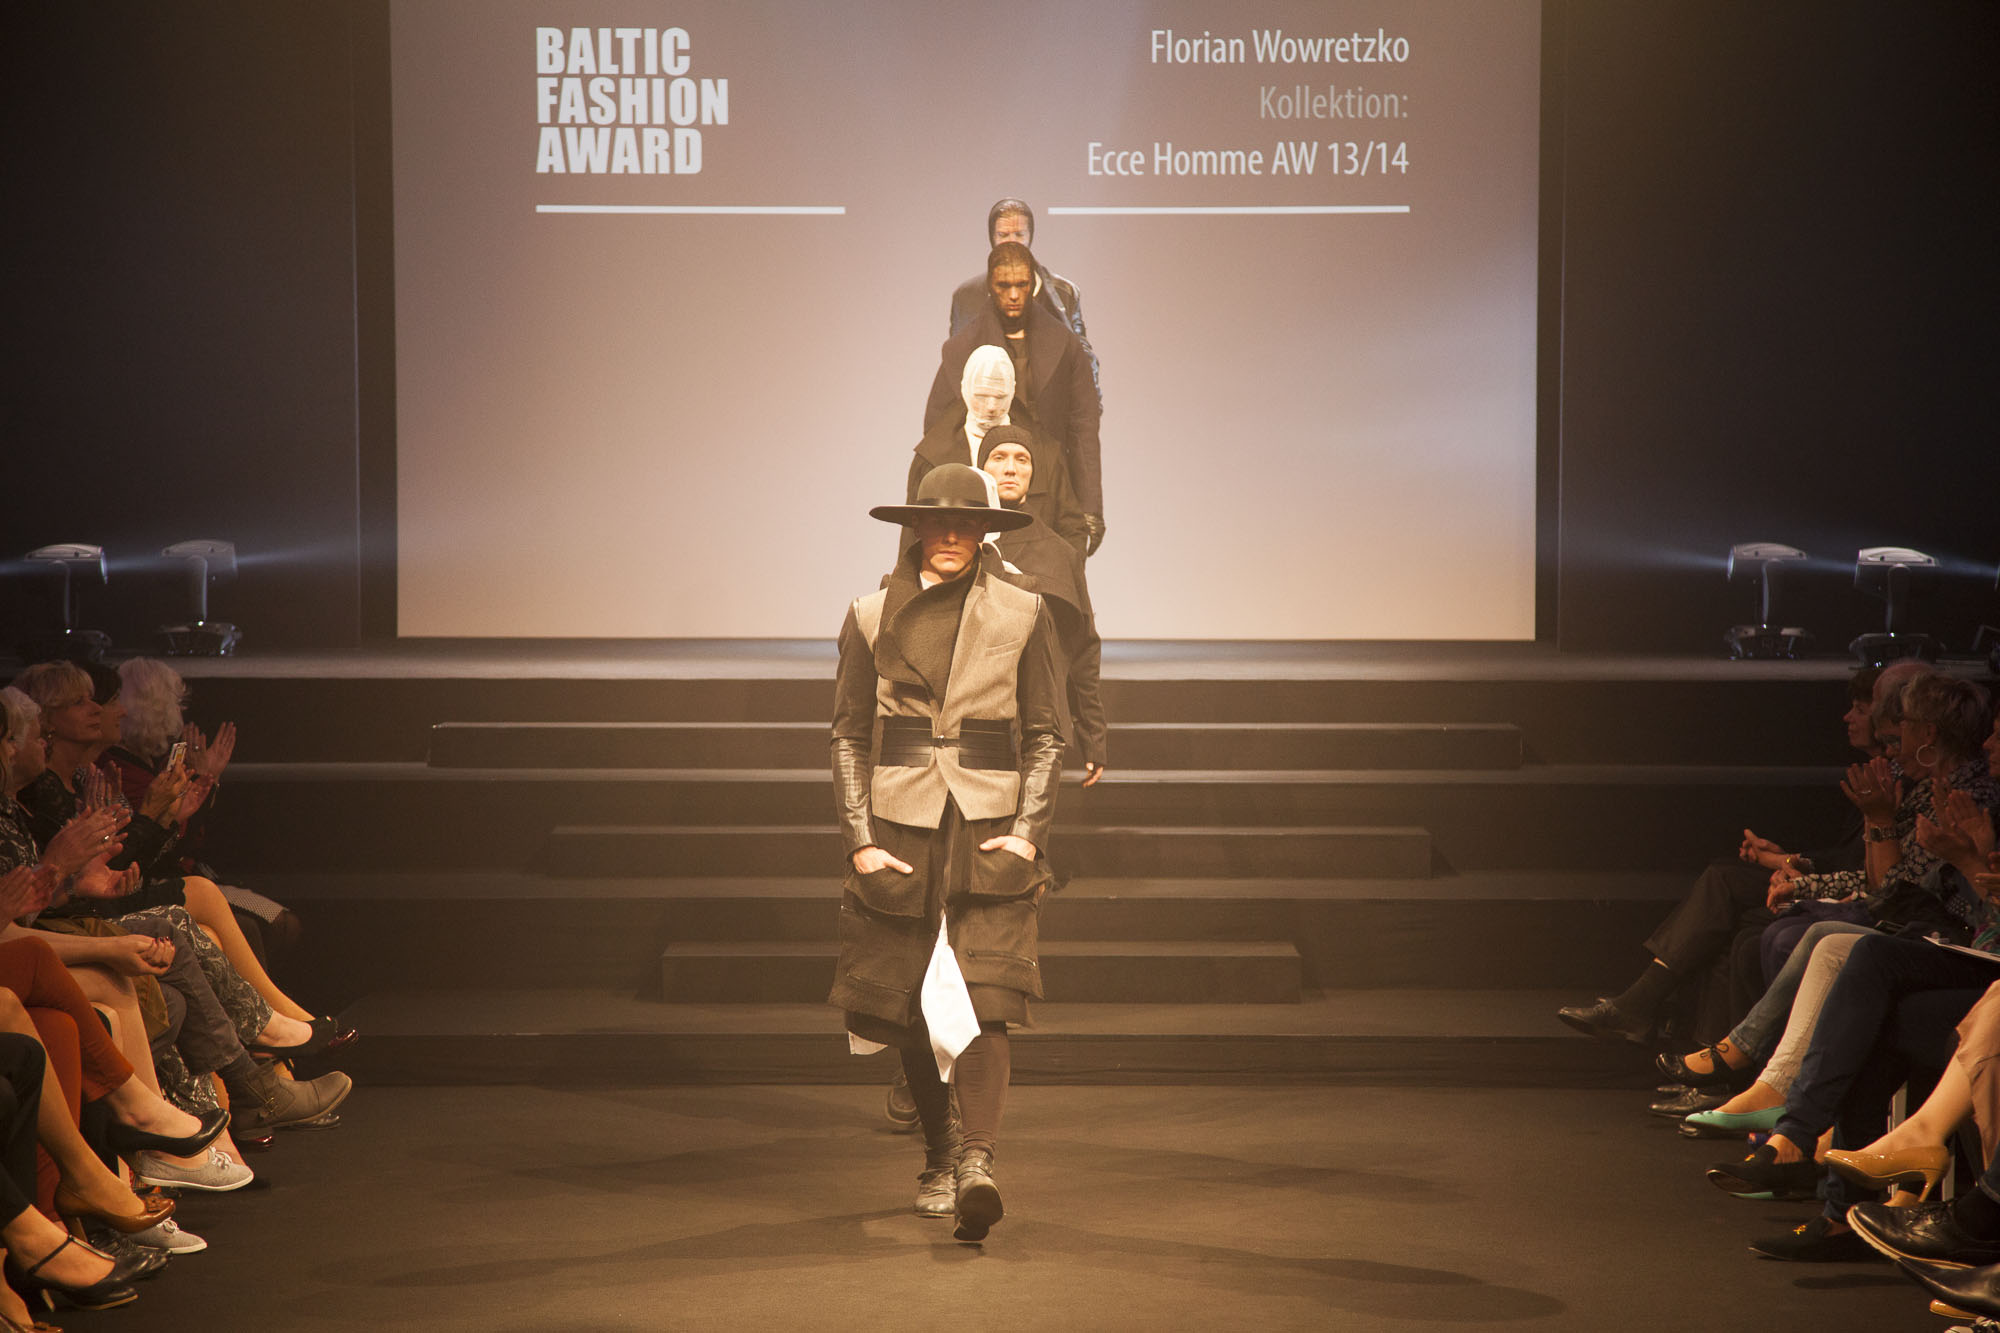 baltic fashion award